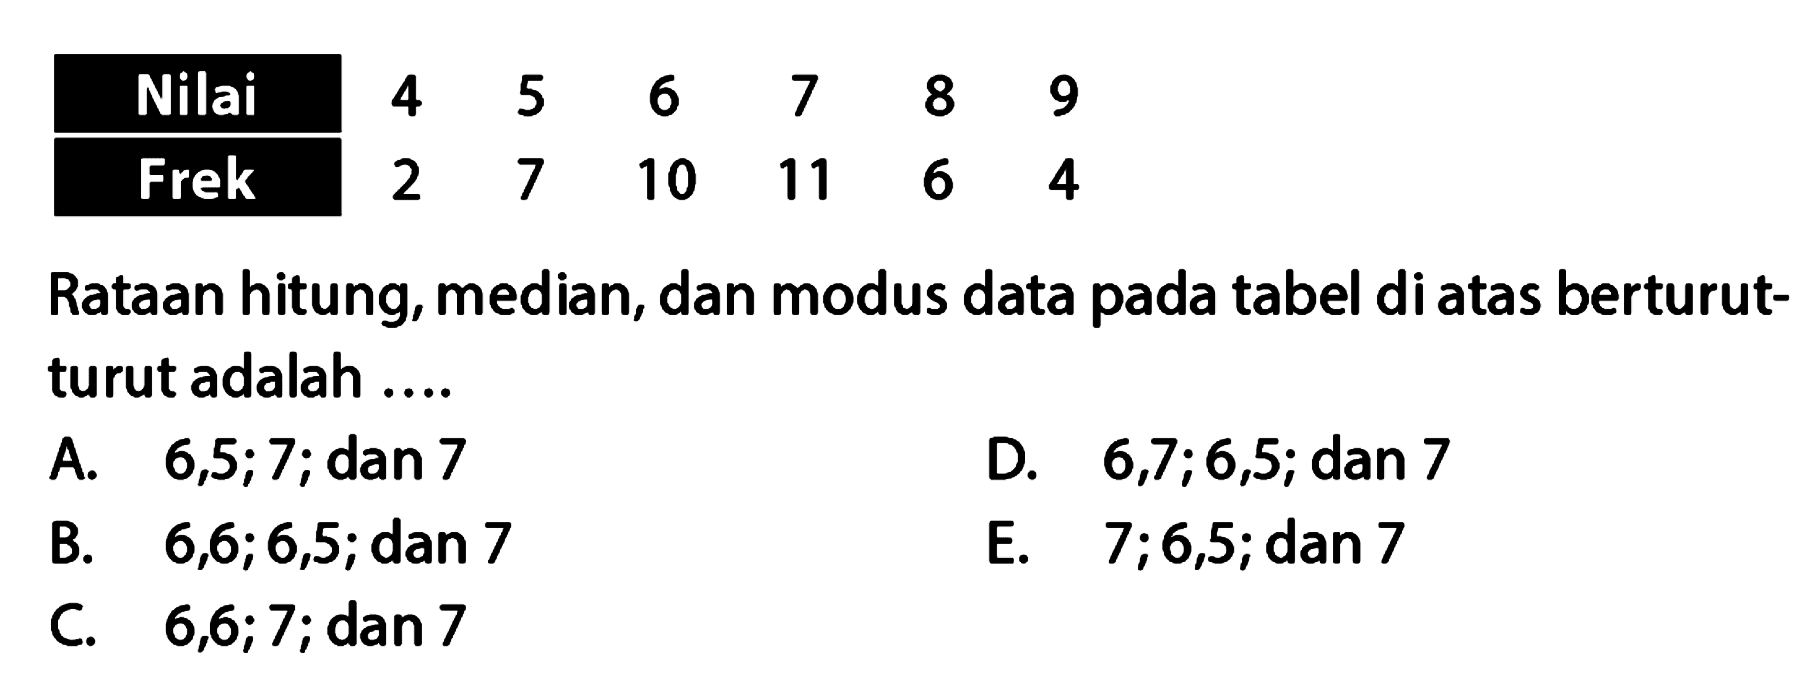 Nilai 5 6 7 8 9 4 Frek 2 7 10 11 6 4 Rataan hitung, median, dan modus data pada tabel diatas berturut- turut adalah